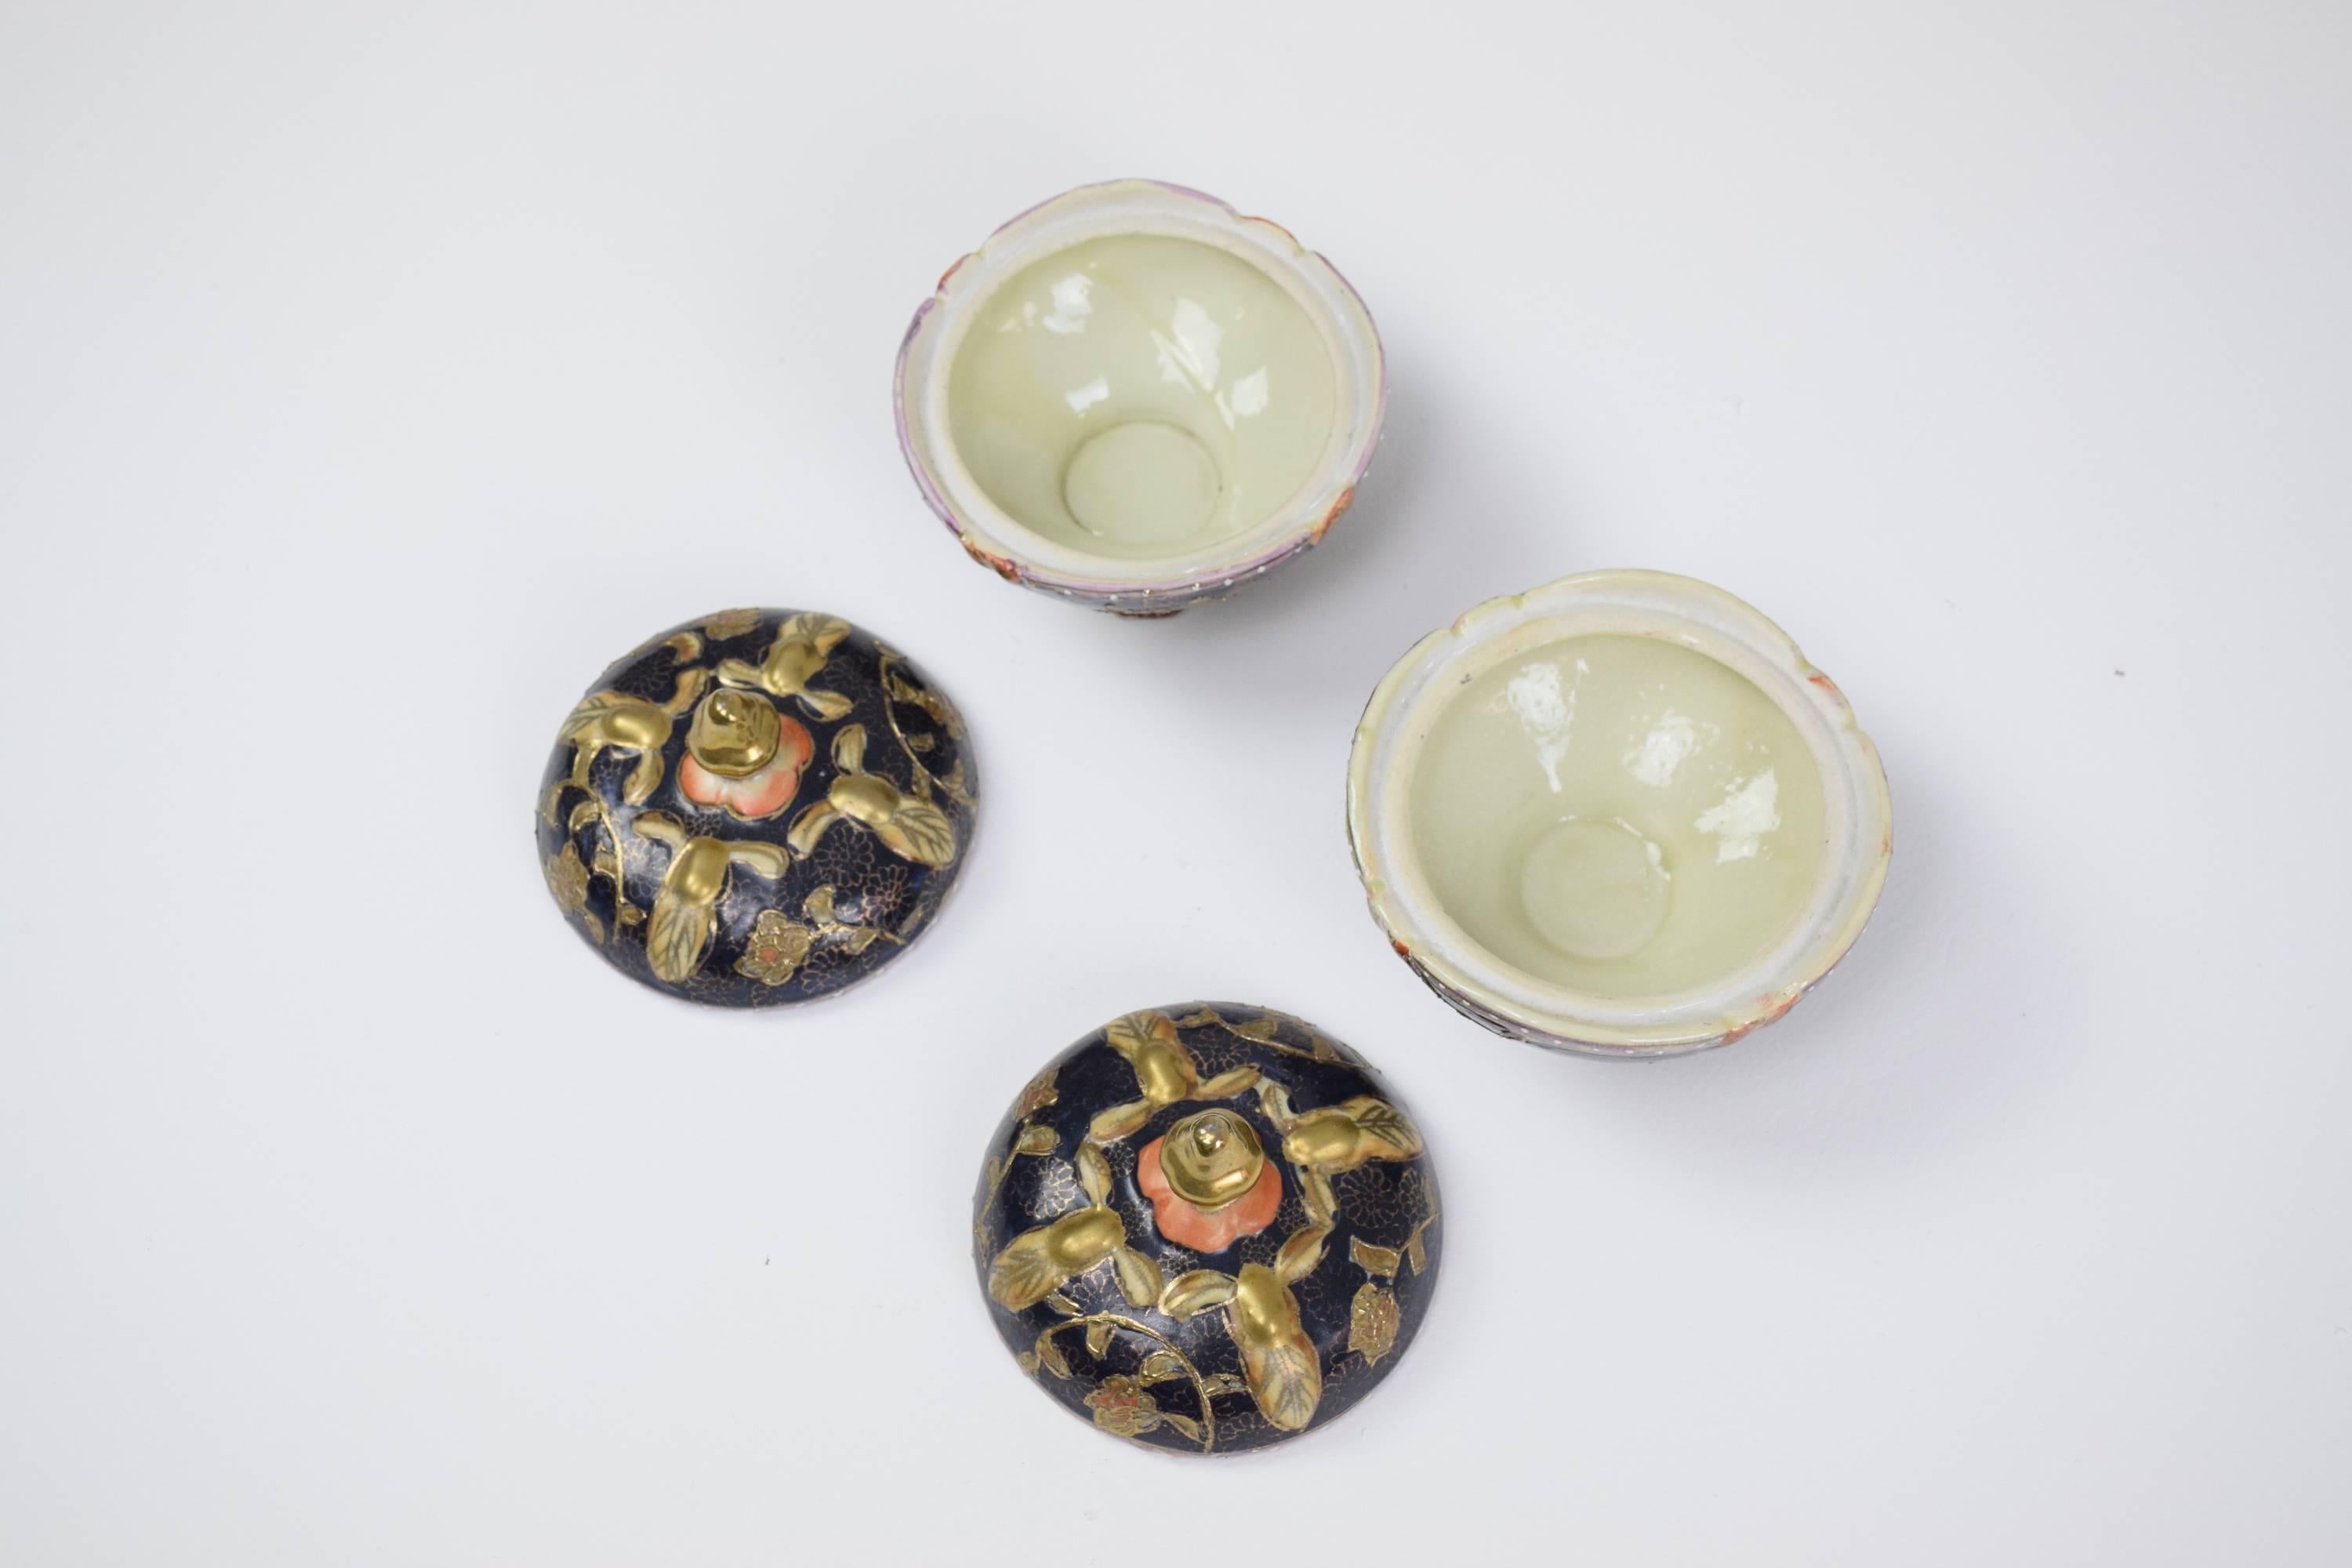 Paar antike Schmuckdosen aus Porzellan und Blattgold aus Satsuma-Ware aus der Dai Nippon/Großjapan-Periode, bemalt von Gyokushu. 

Das Shimazu-Wappen oben (Kreis mit Kreuz): Die meisten alten und authentischen Stücke von Satsumaware tragen das